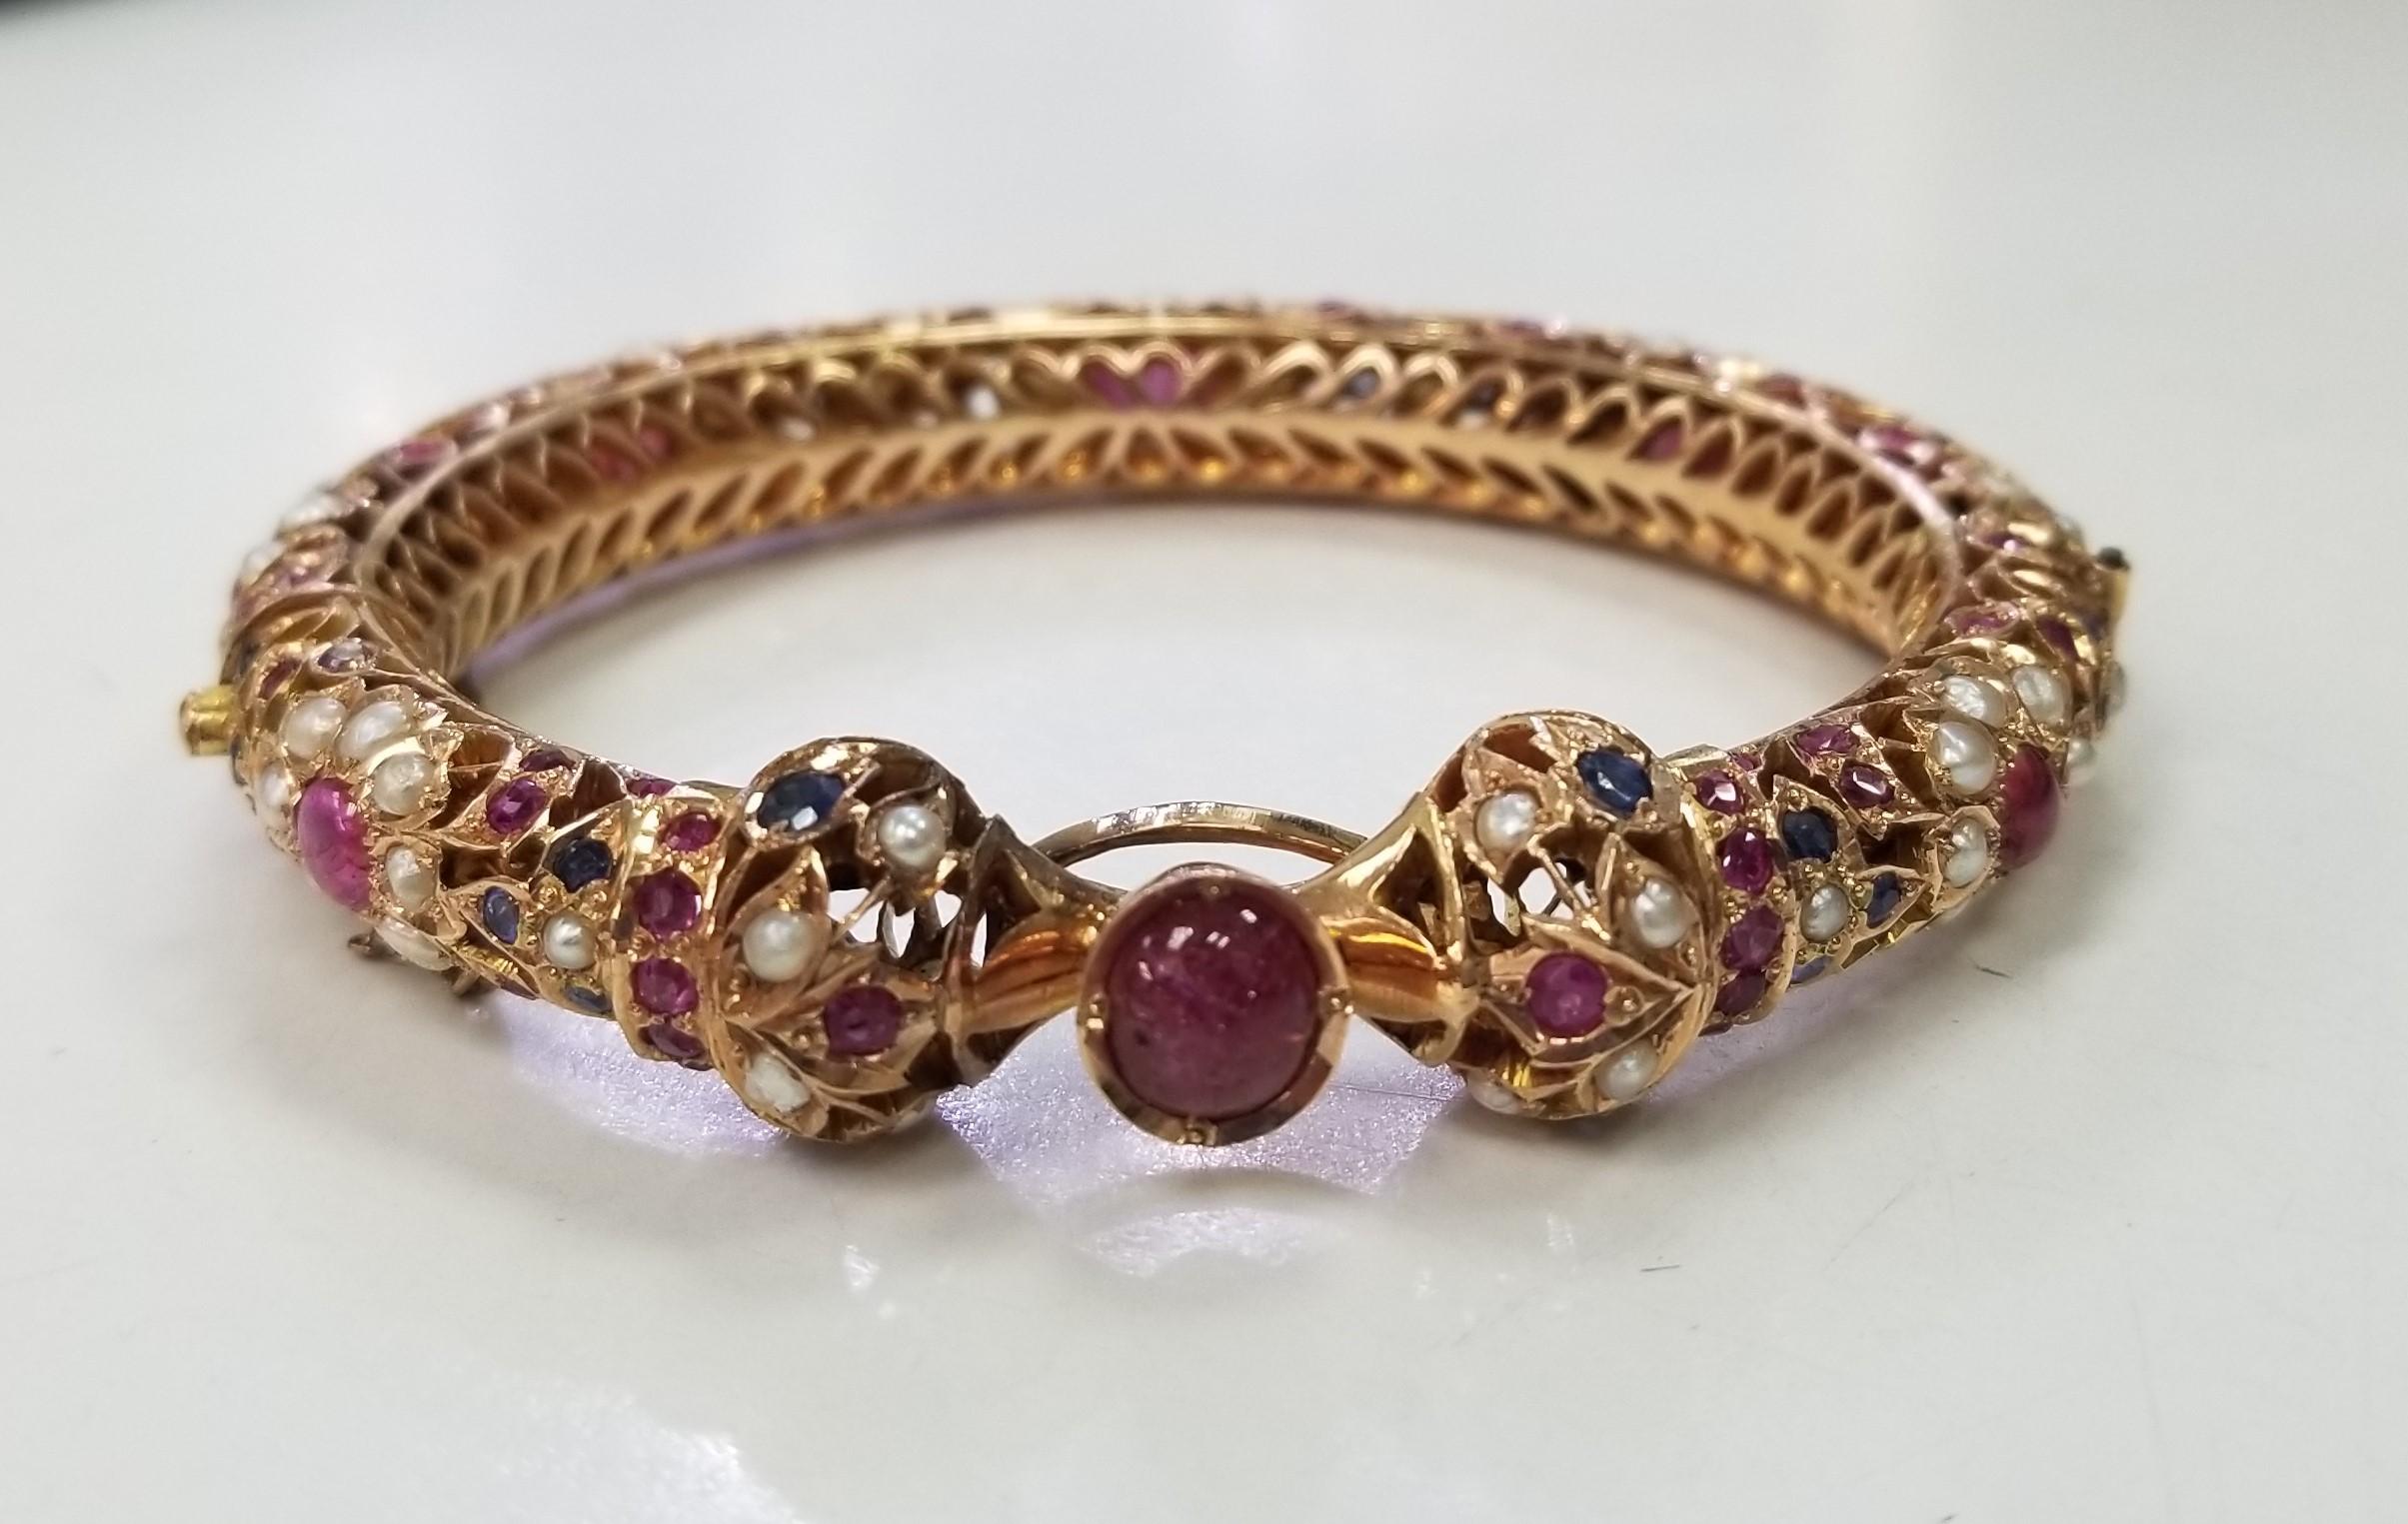 Ce bracelet exquis présente un délicat filigrane en or 14 carats orné de rubis, de saphirs et de perles éblouissants. Sa fabrication complexe et détaillée en fait le choix idéal pour un événement formel ou une occasion spéciale. Véritable